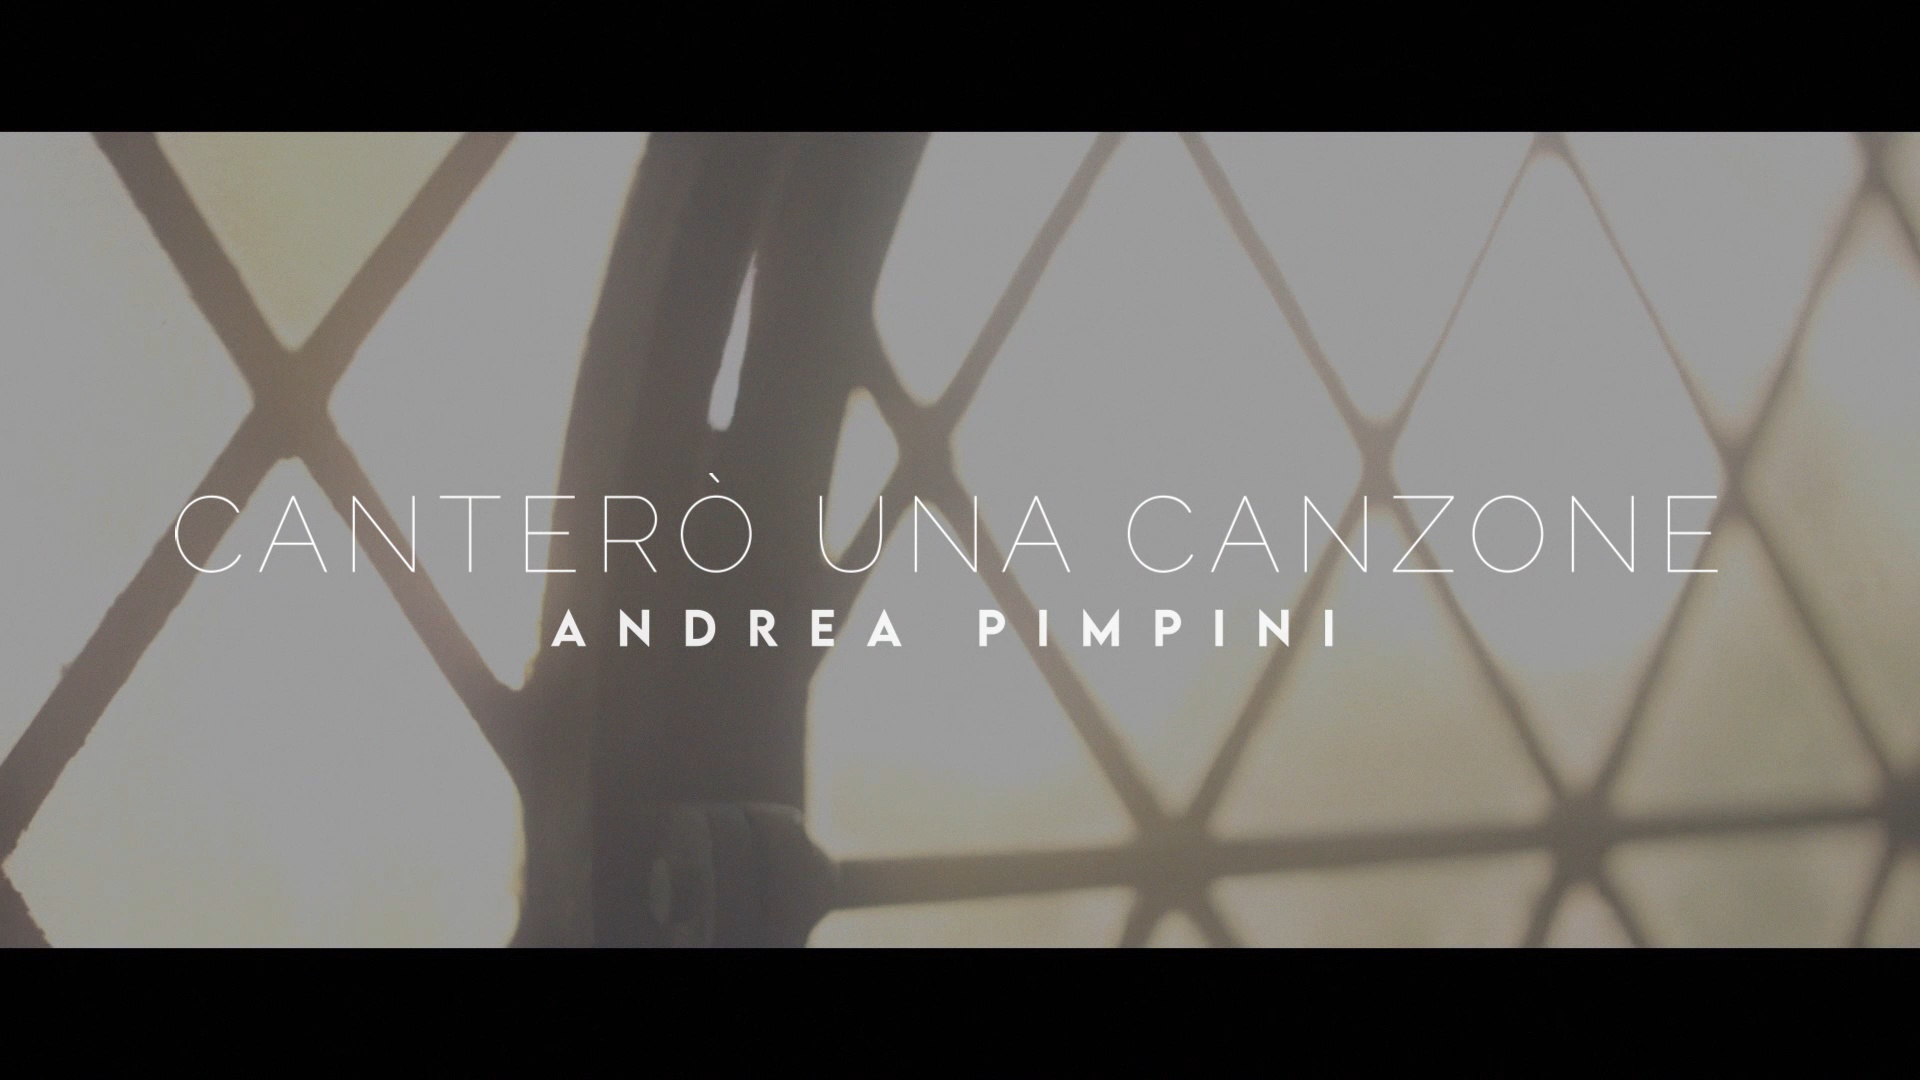 Disponibile da oggi su YouTube e VEVO il videoclip di “Canterò Una Canzone” di Andrea Pimpini